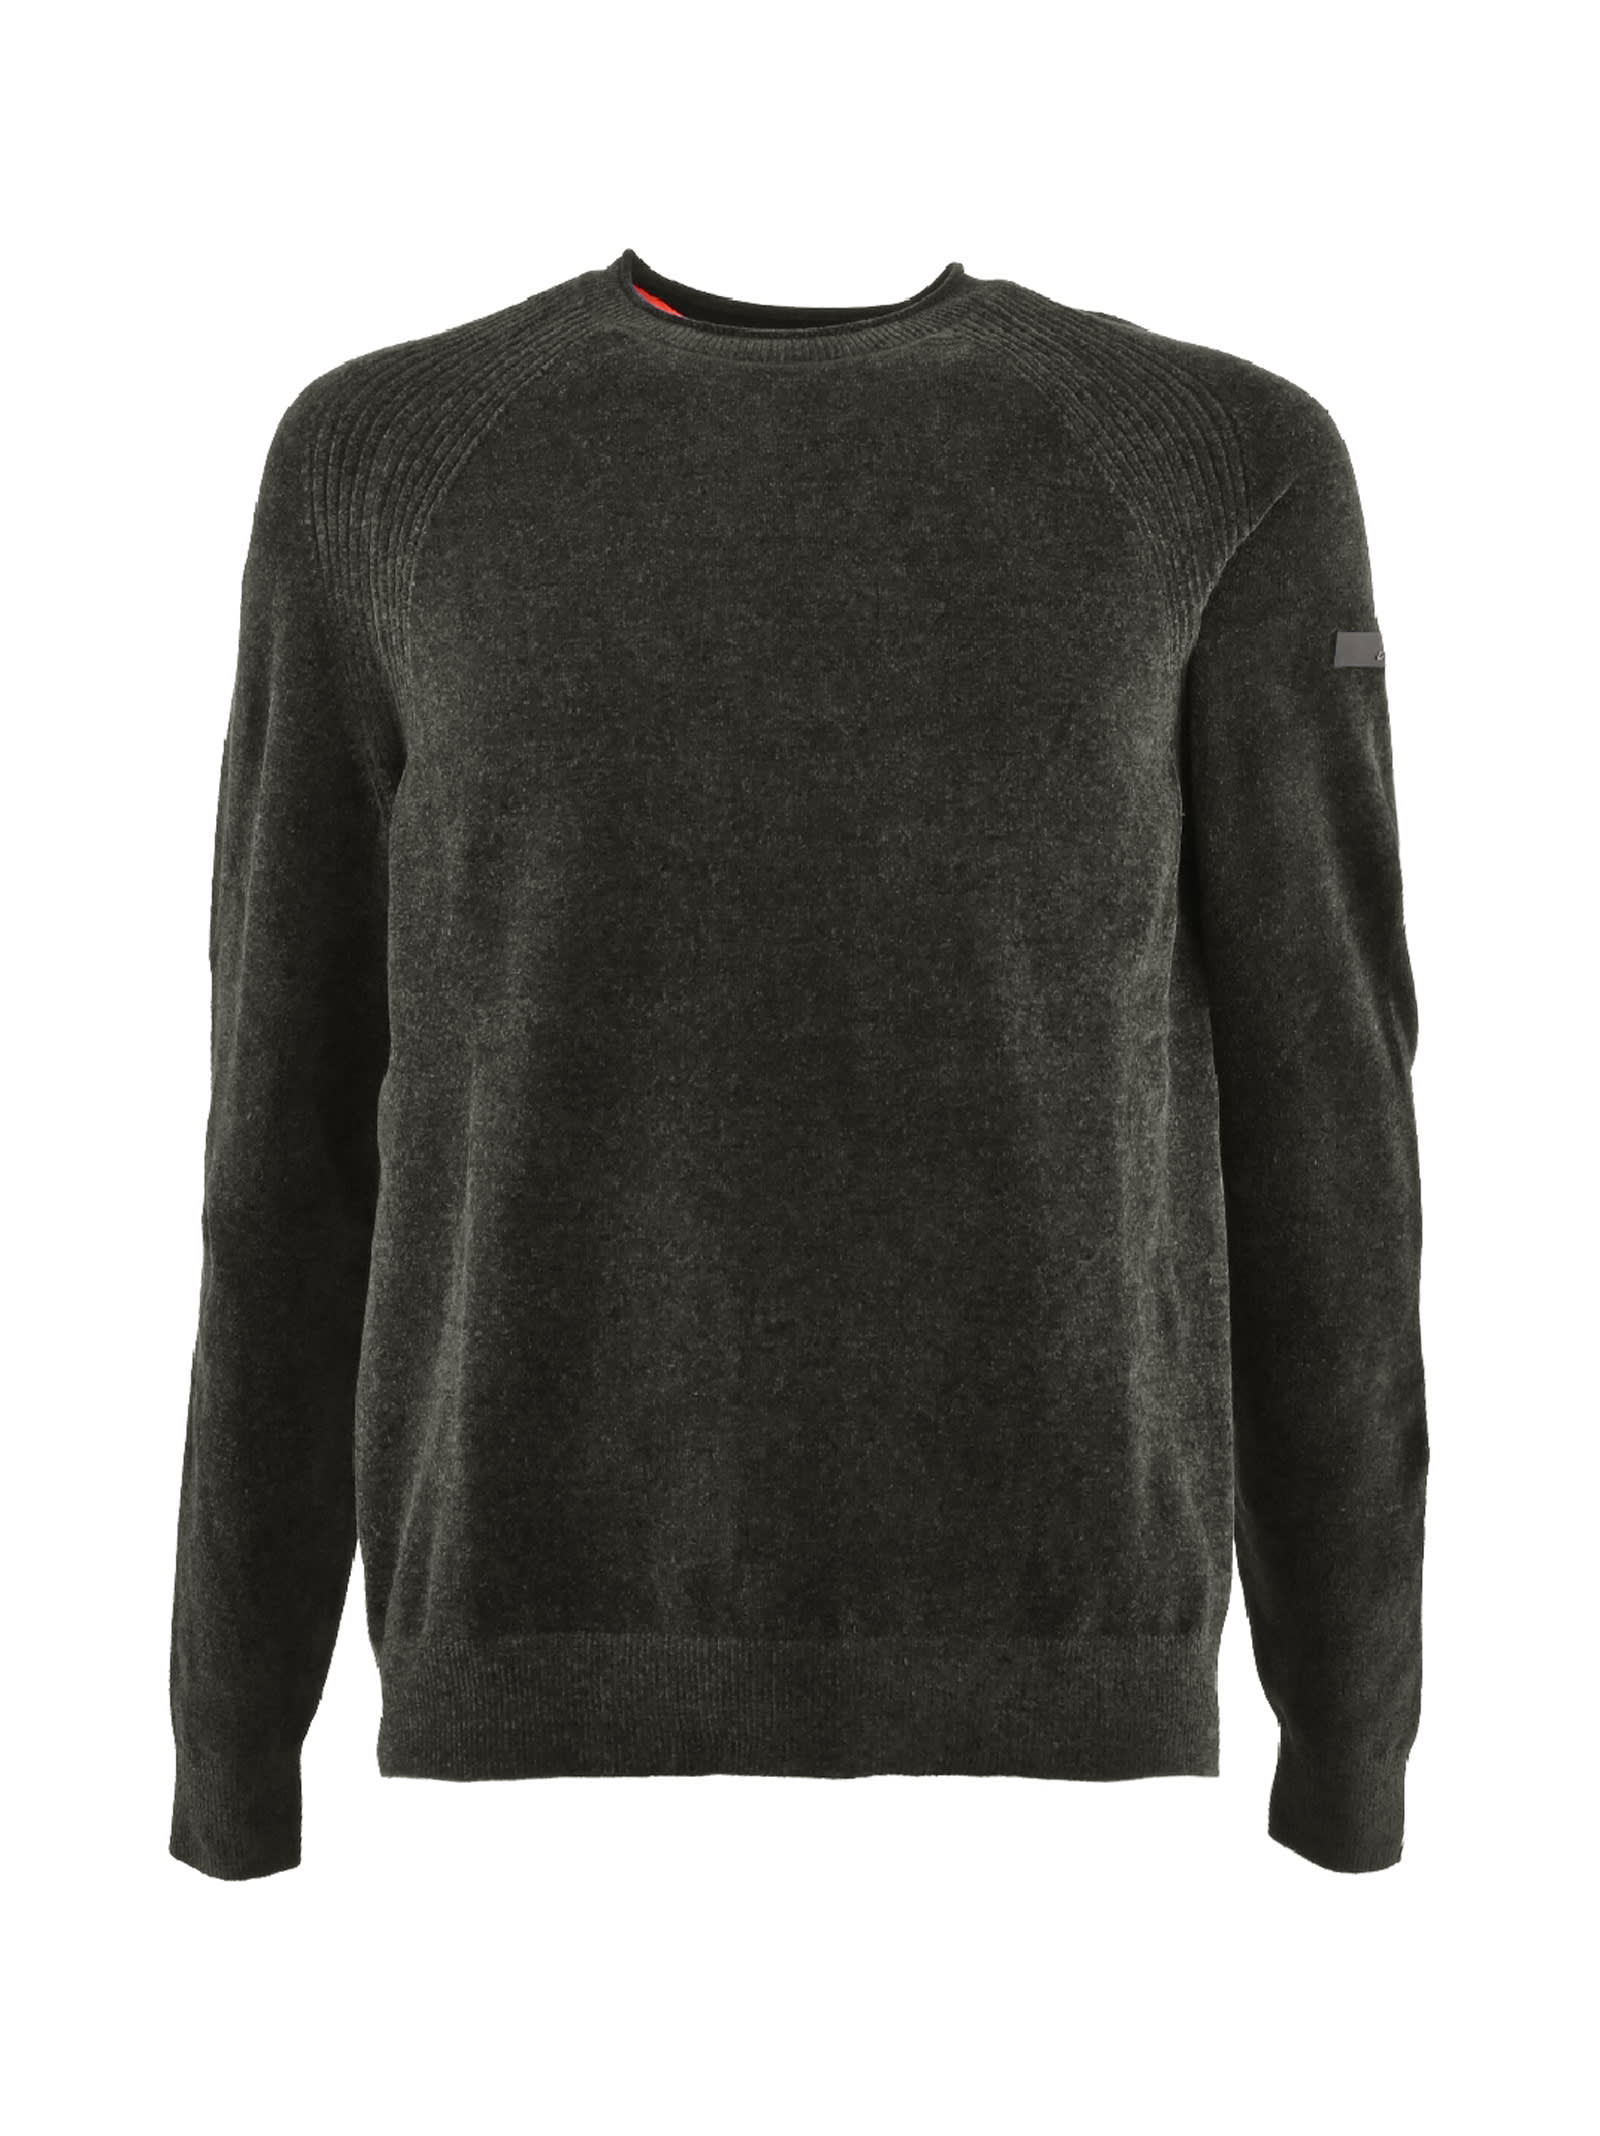 RRD - Roberto Ricci Design Chenille Sweater